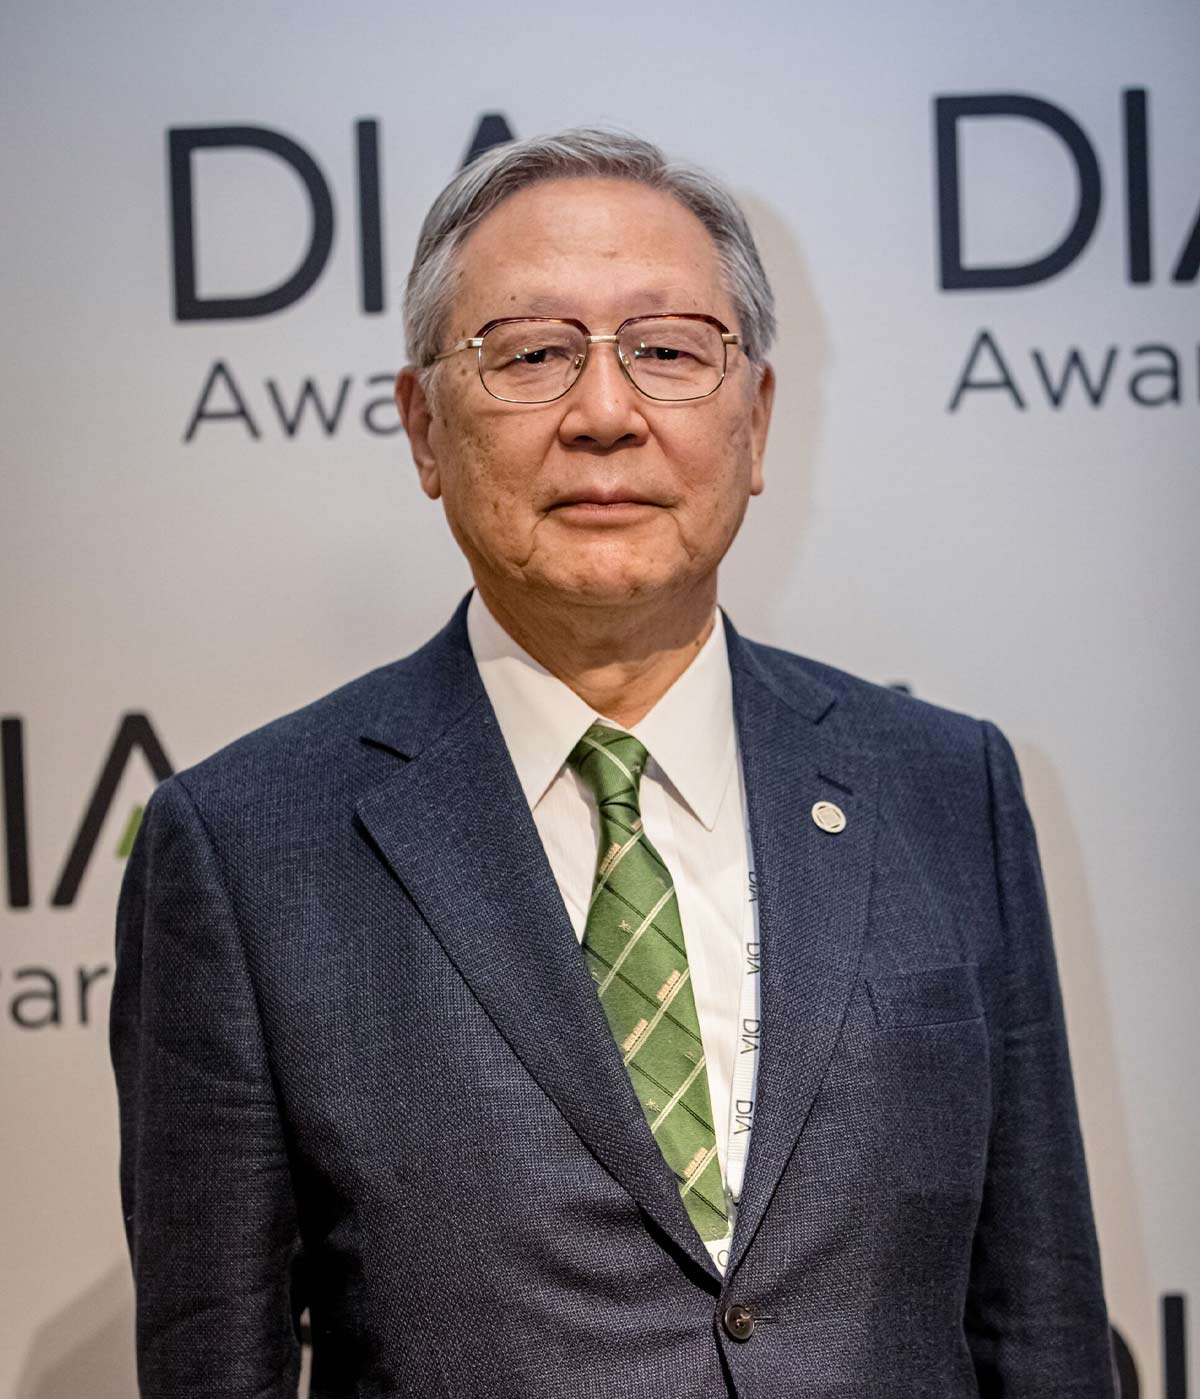 Dr. Tatsuya Kondo at the DIA Awards